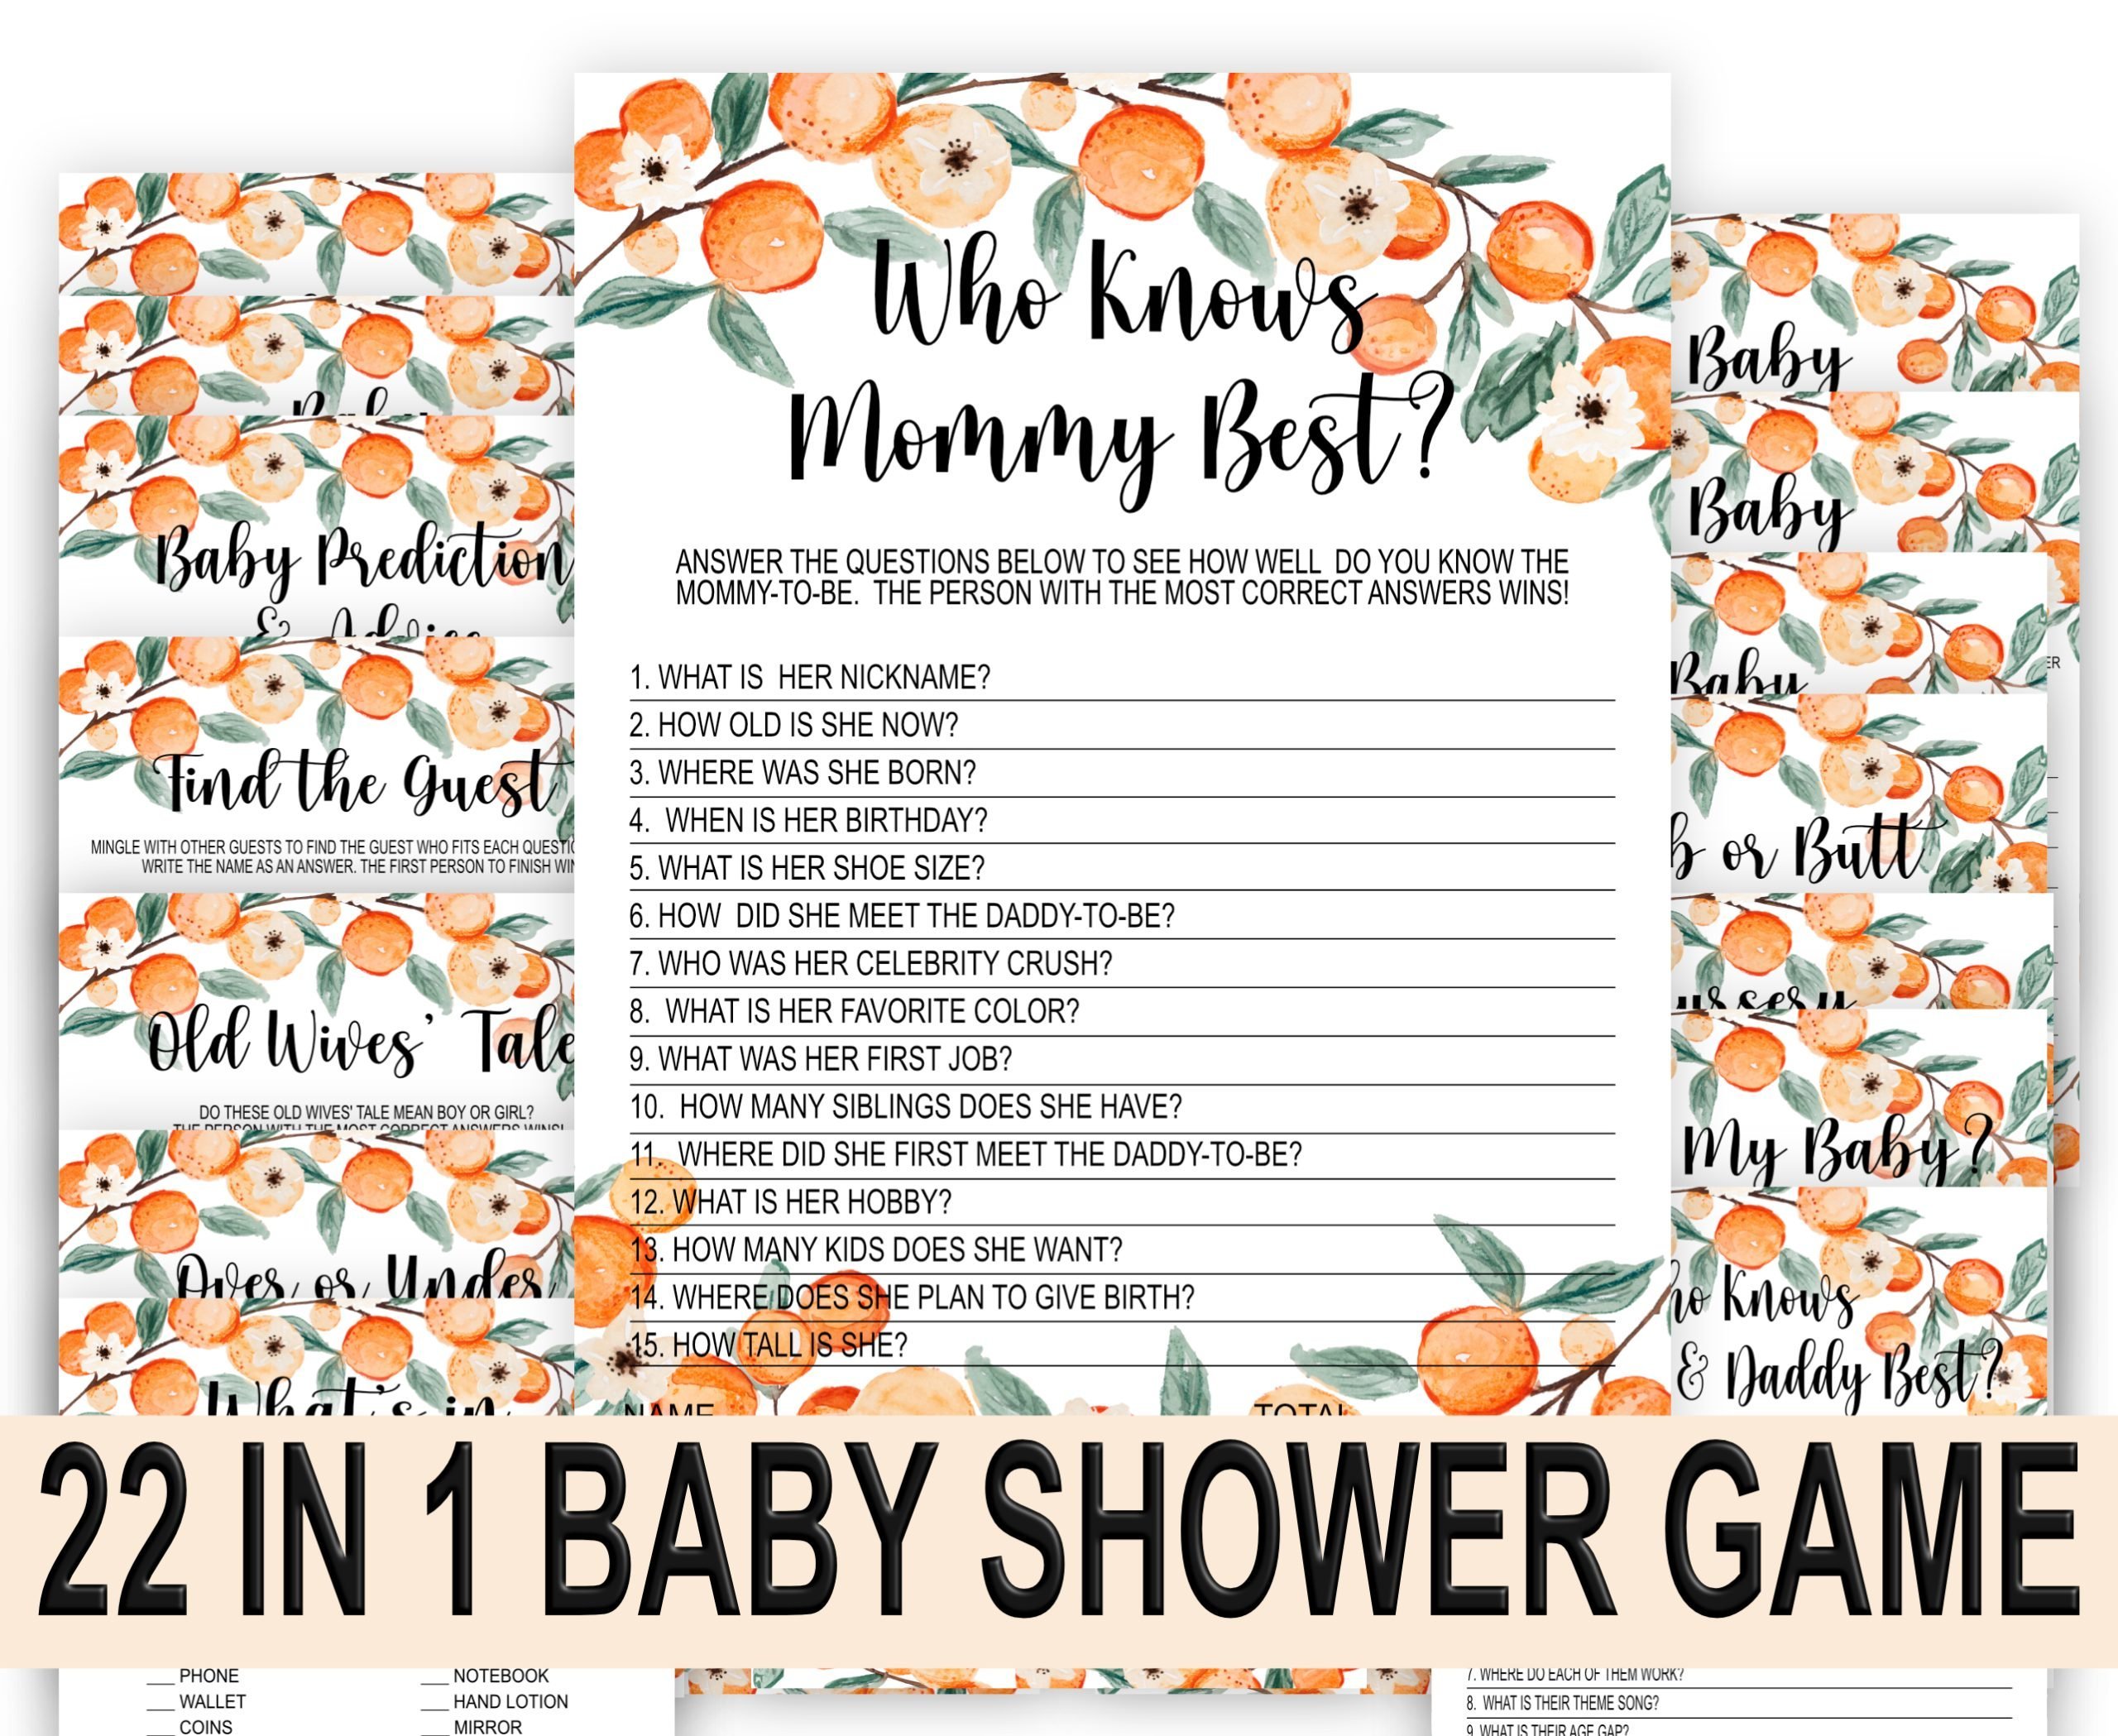 BABY SHOWER Little Cutie Baby Shower Games Bundle – Clementine Orange Theme” baby shower activities